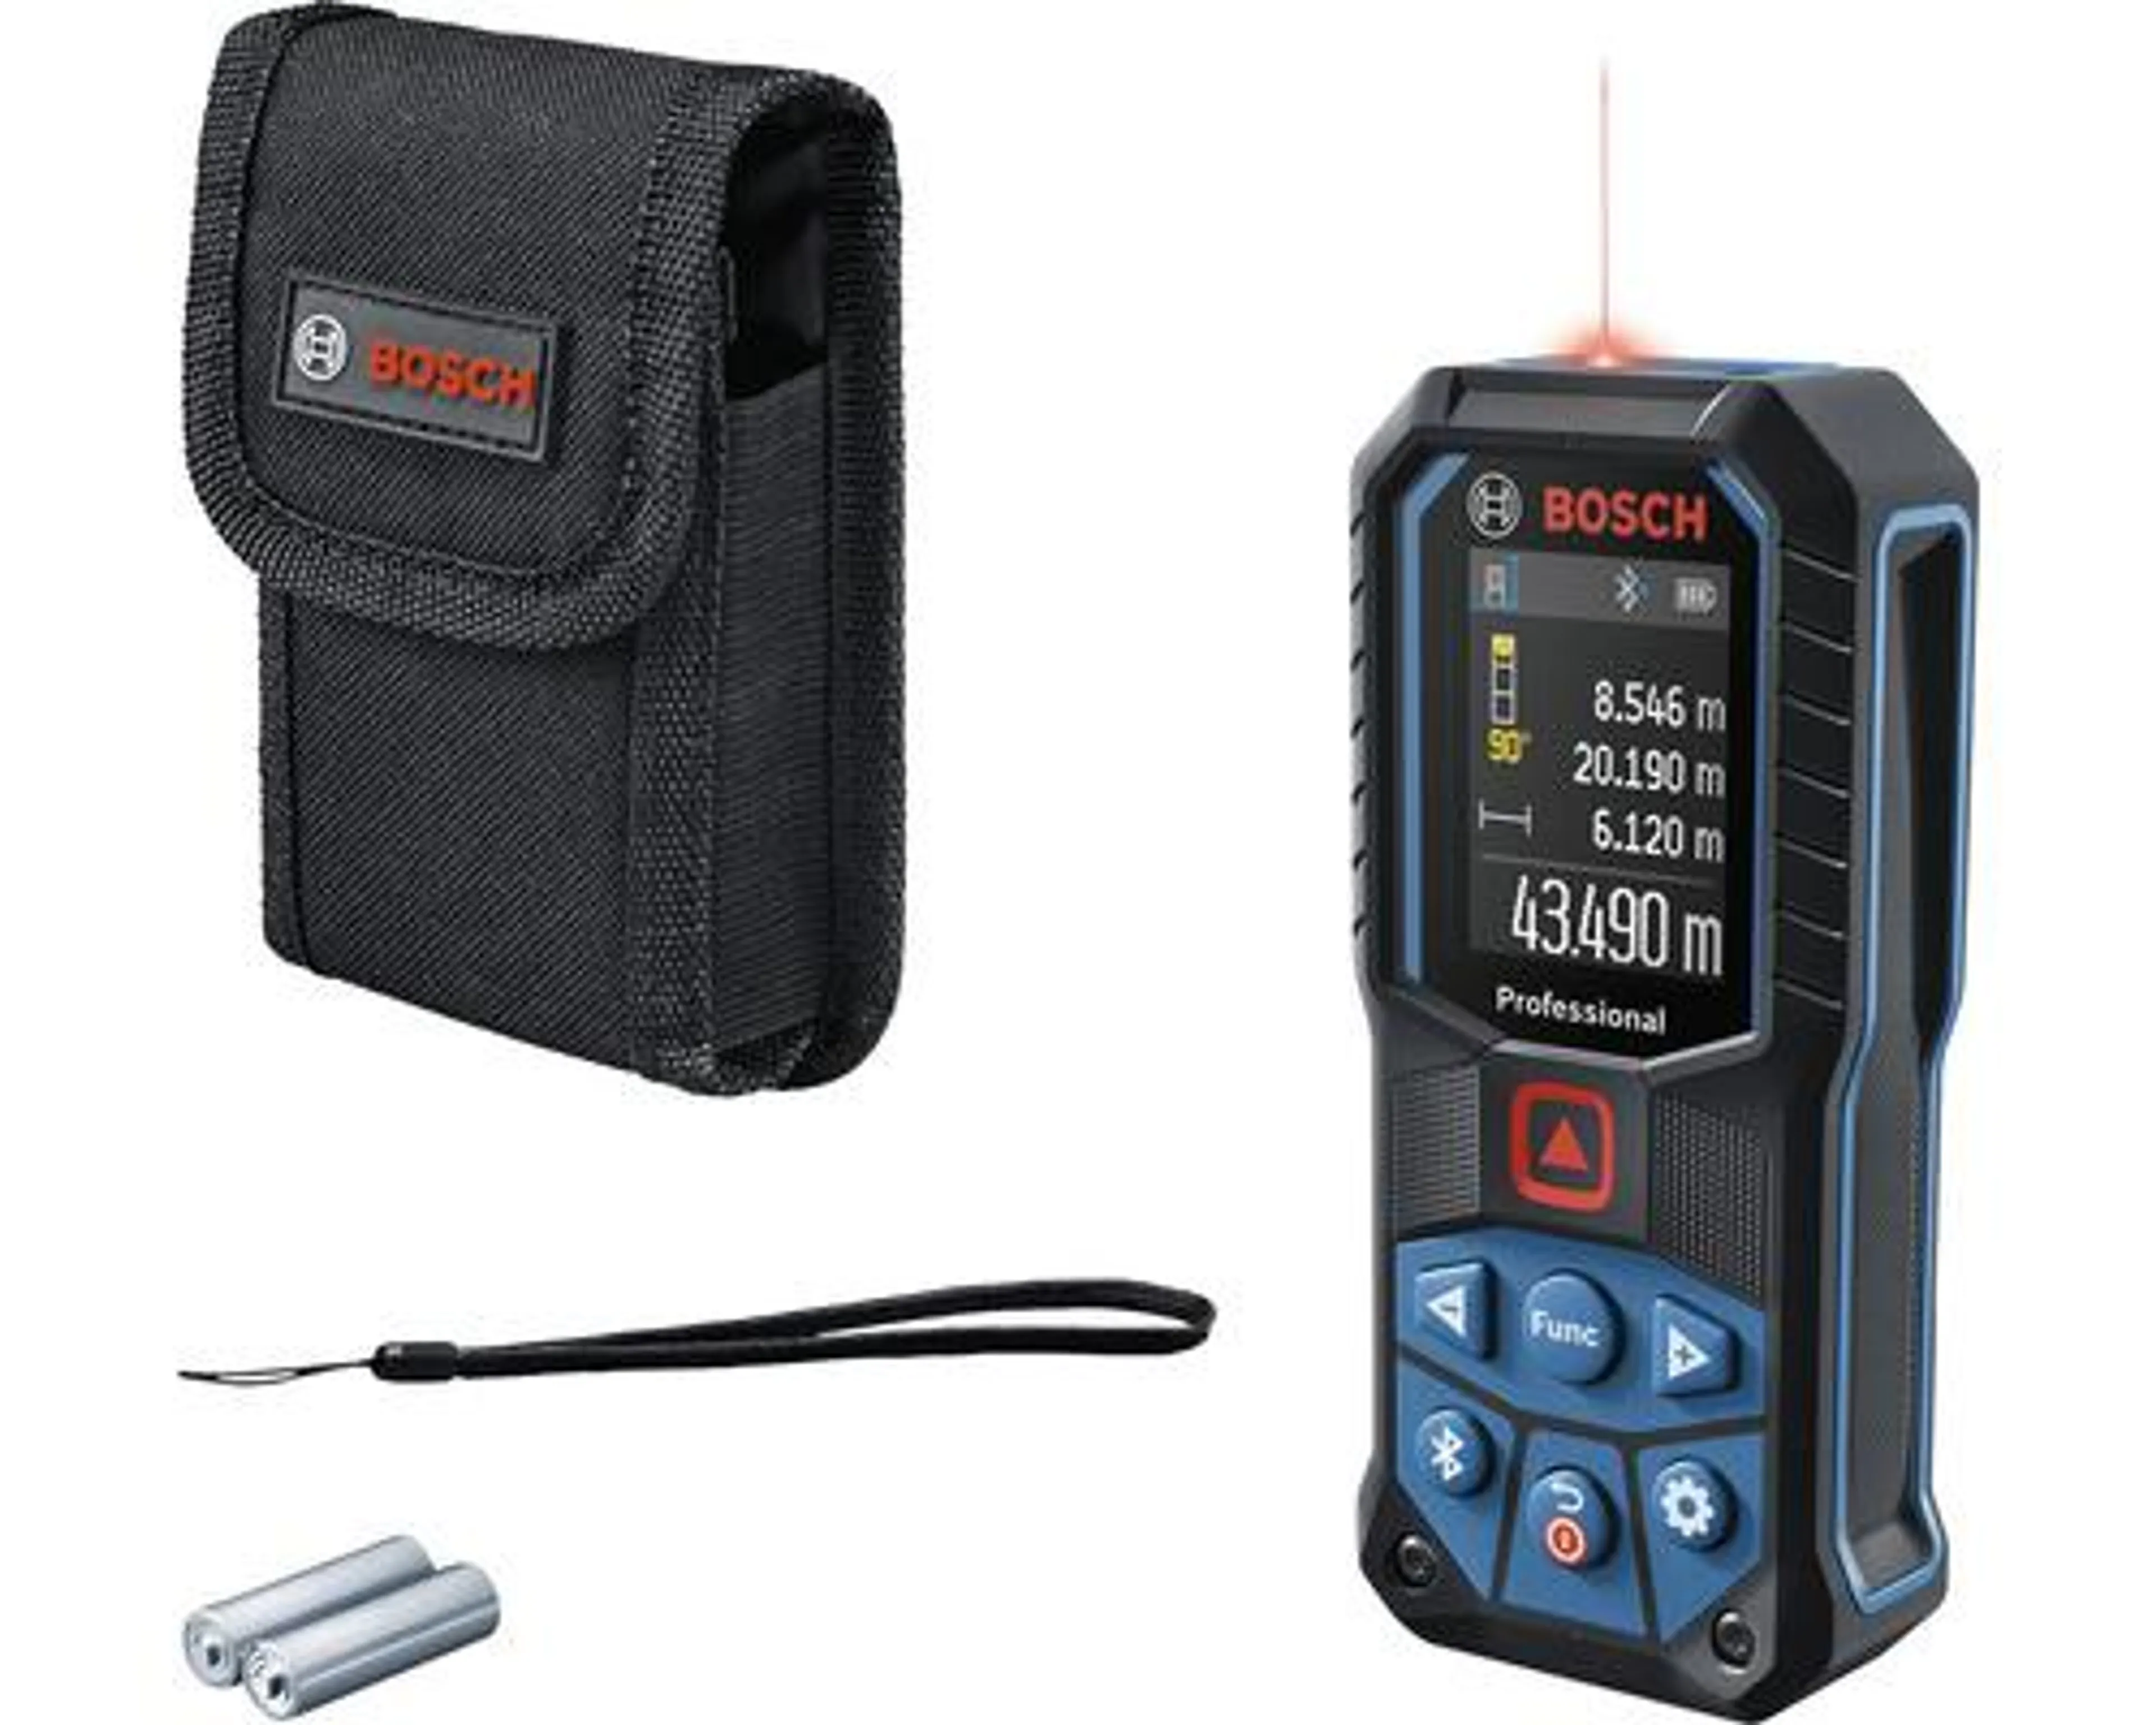 Laserový merač vzdialenosti Bosch GLM 50-27 C Professional, vrátane 2 x batérií (AA) a ochranného puzdra